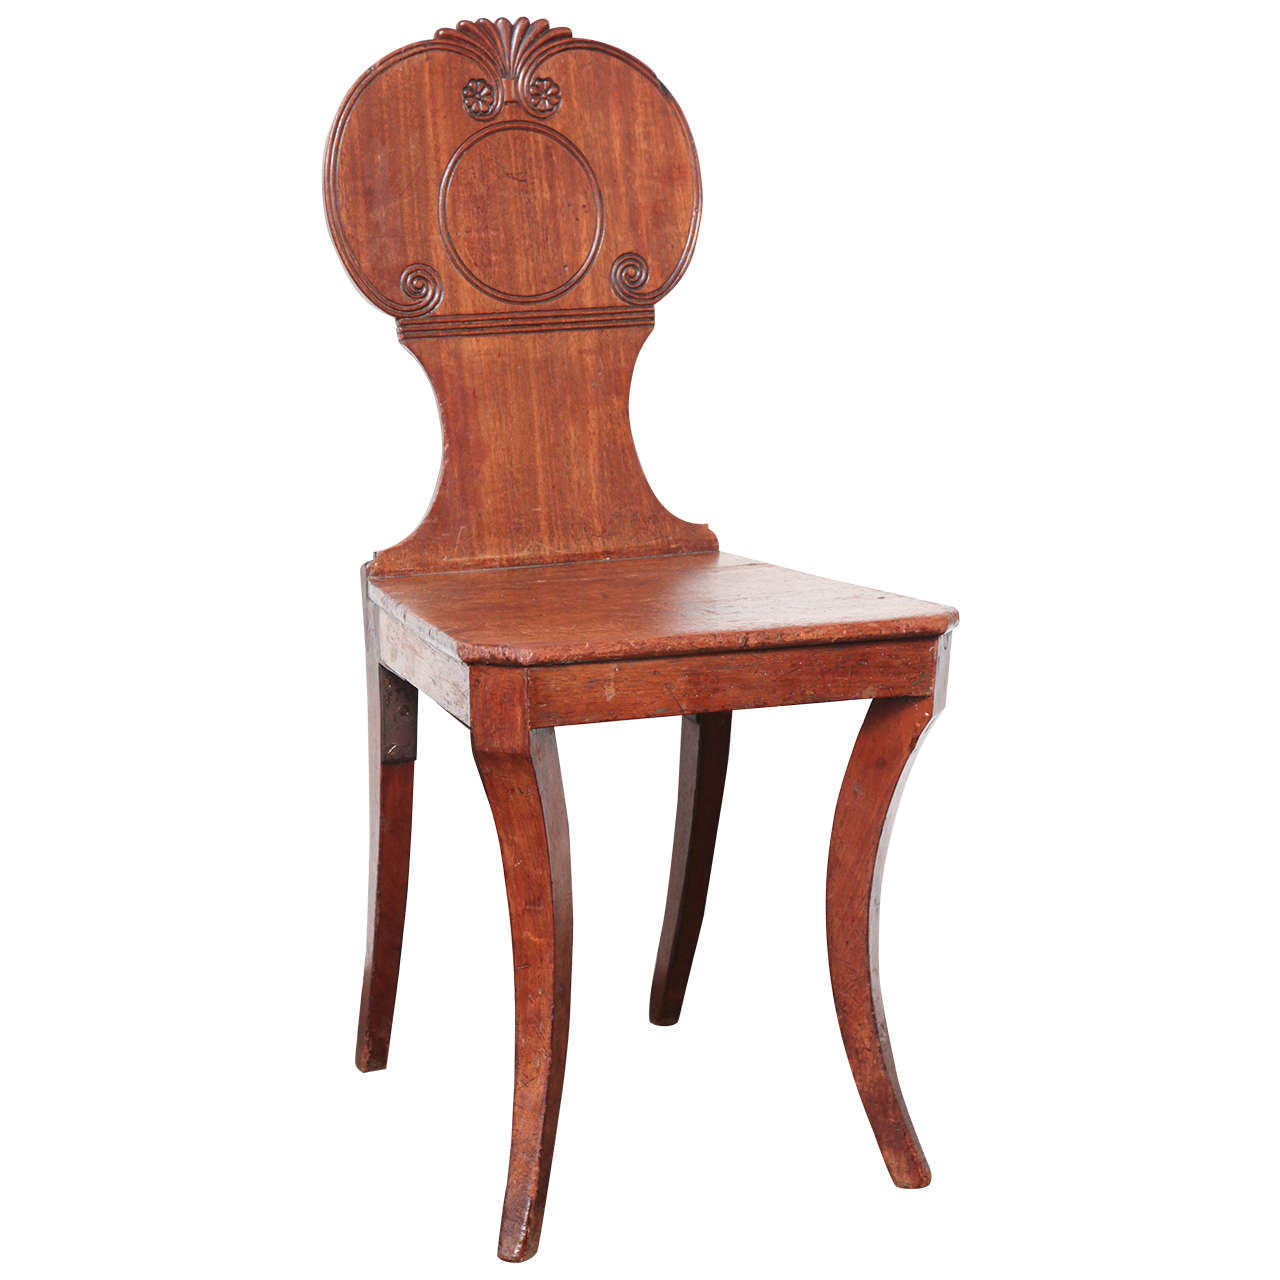 Early 19th Century English Regency Mahogany Hall Chair